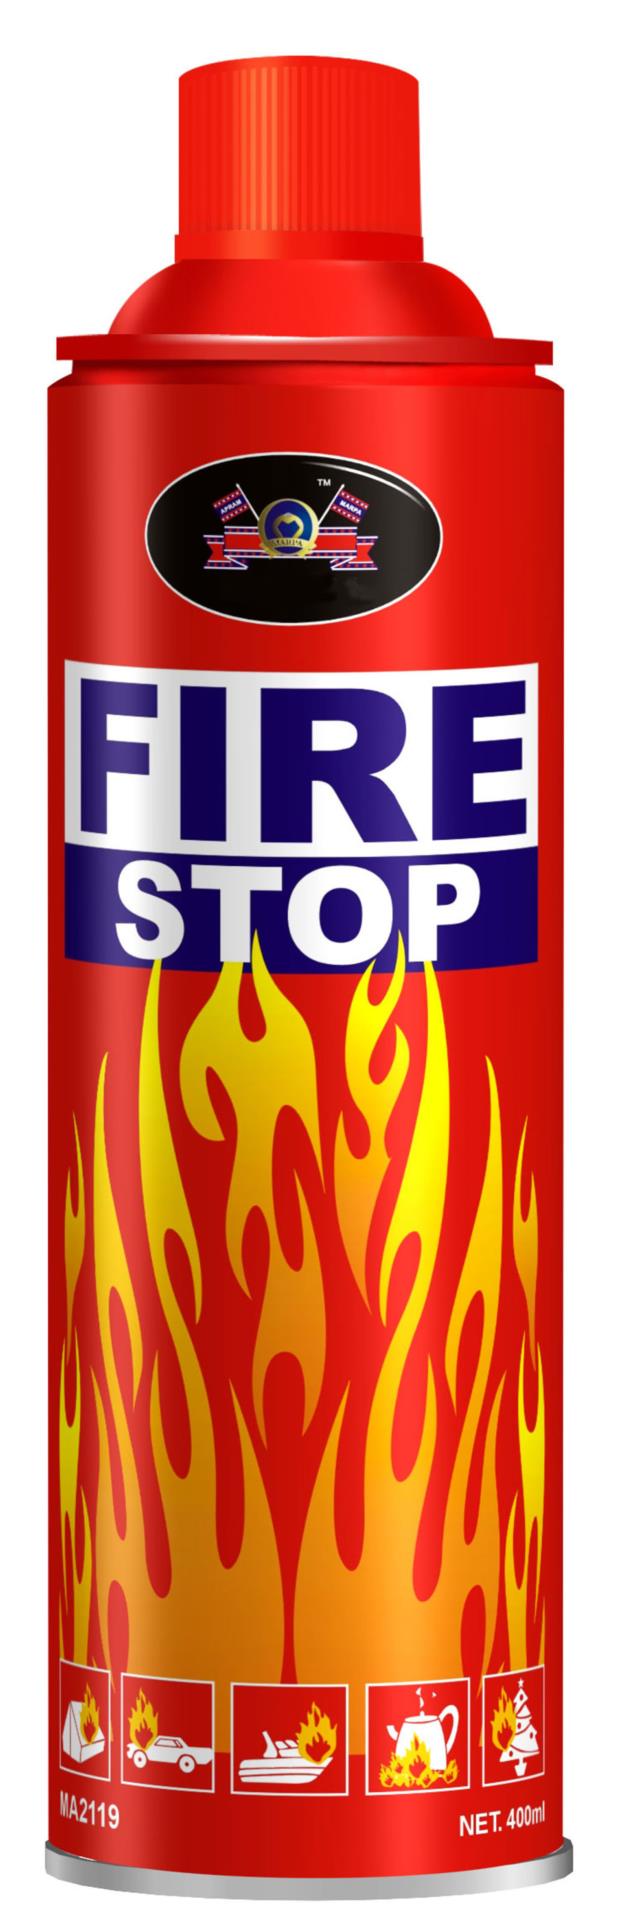 FIRE STOP - Feuerlöschspray